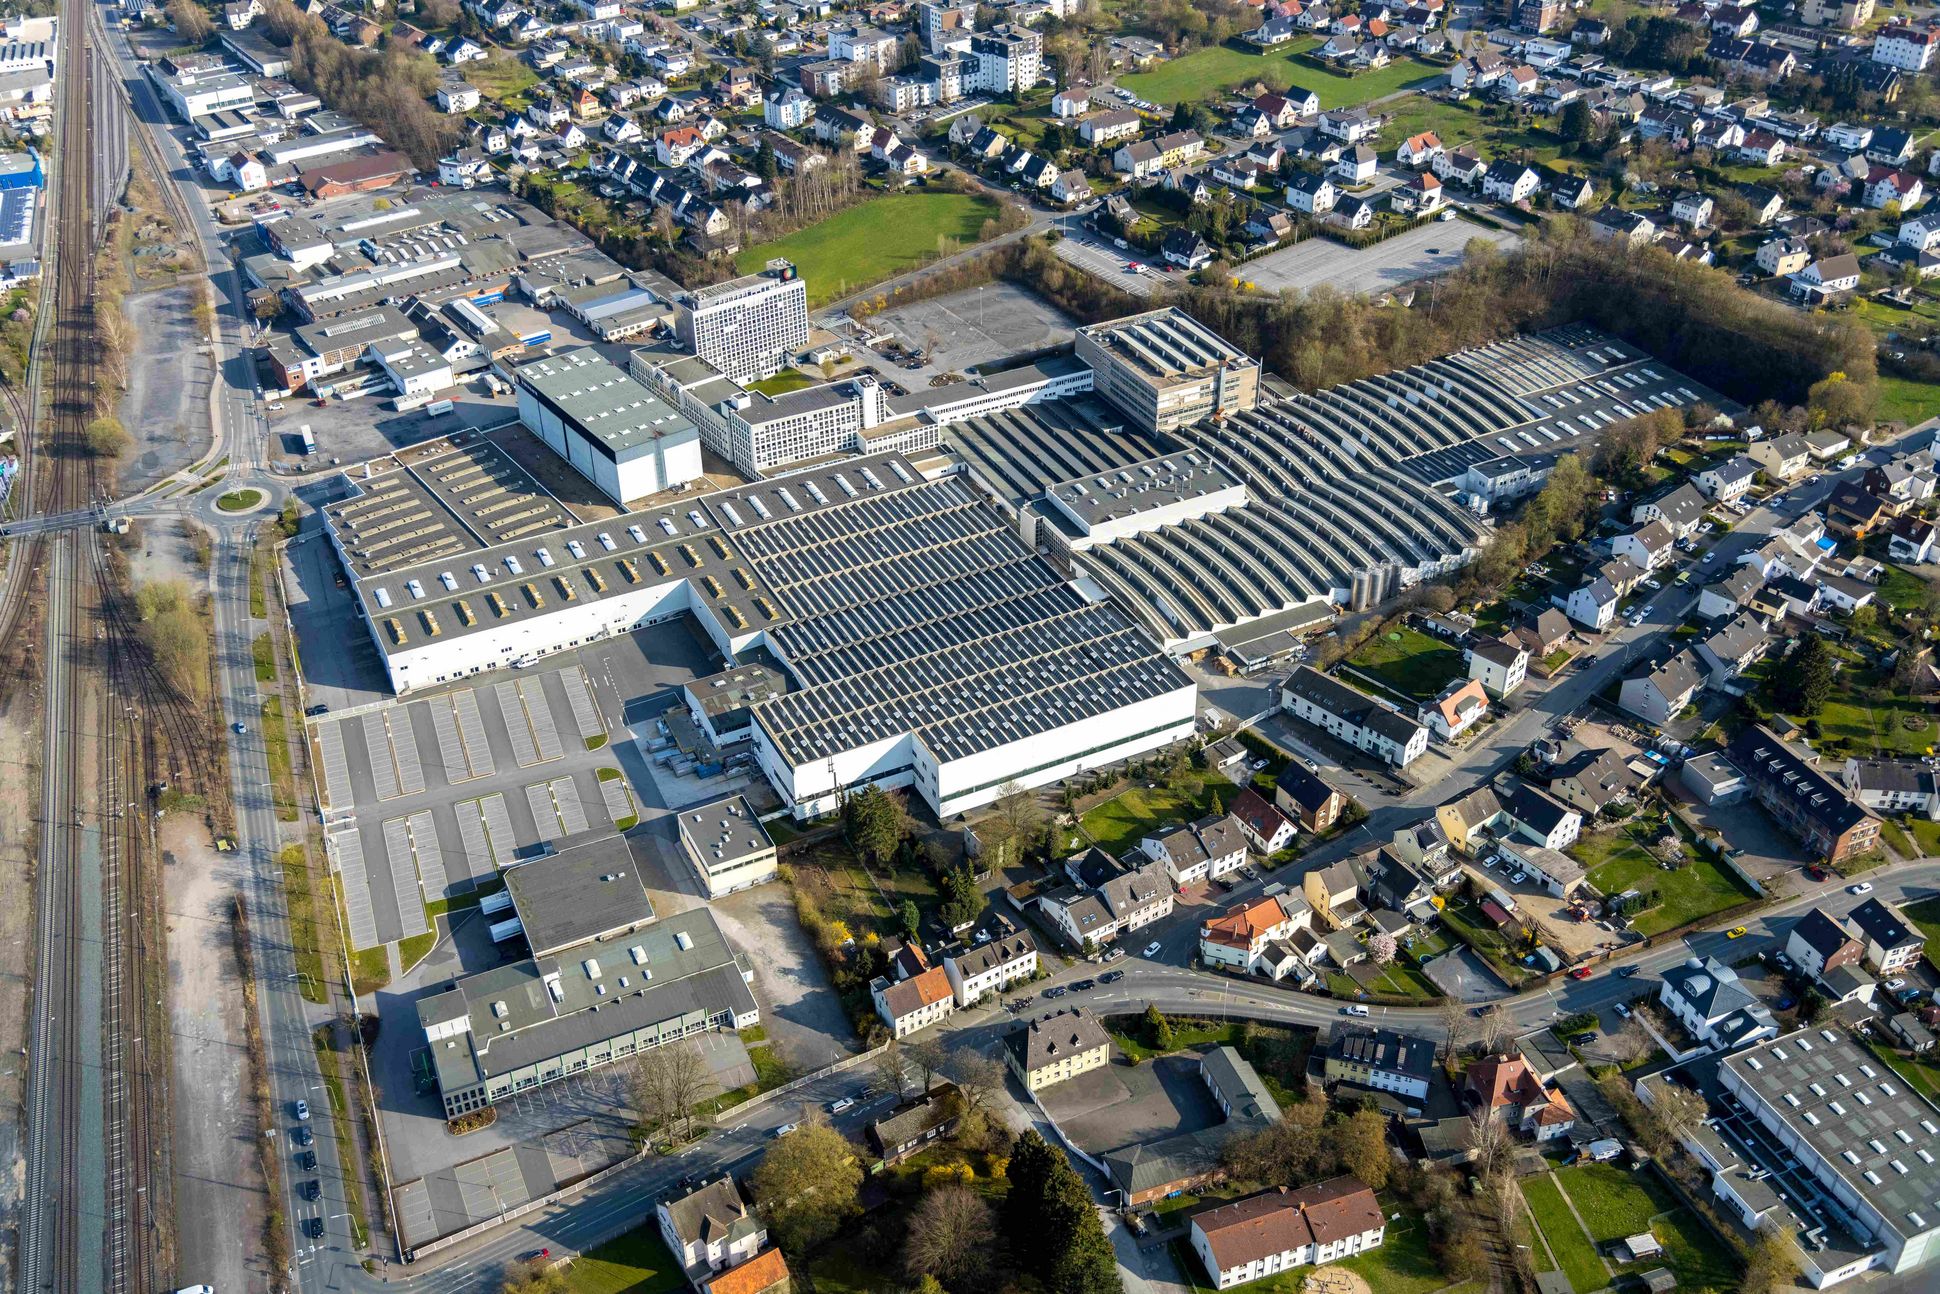 Luftbild von der TRILUX GmbH & Co. KG Neheim in Arnsberg im Sauerland in Nordrhein-Westfalen, Deutschland.